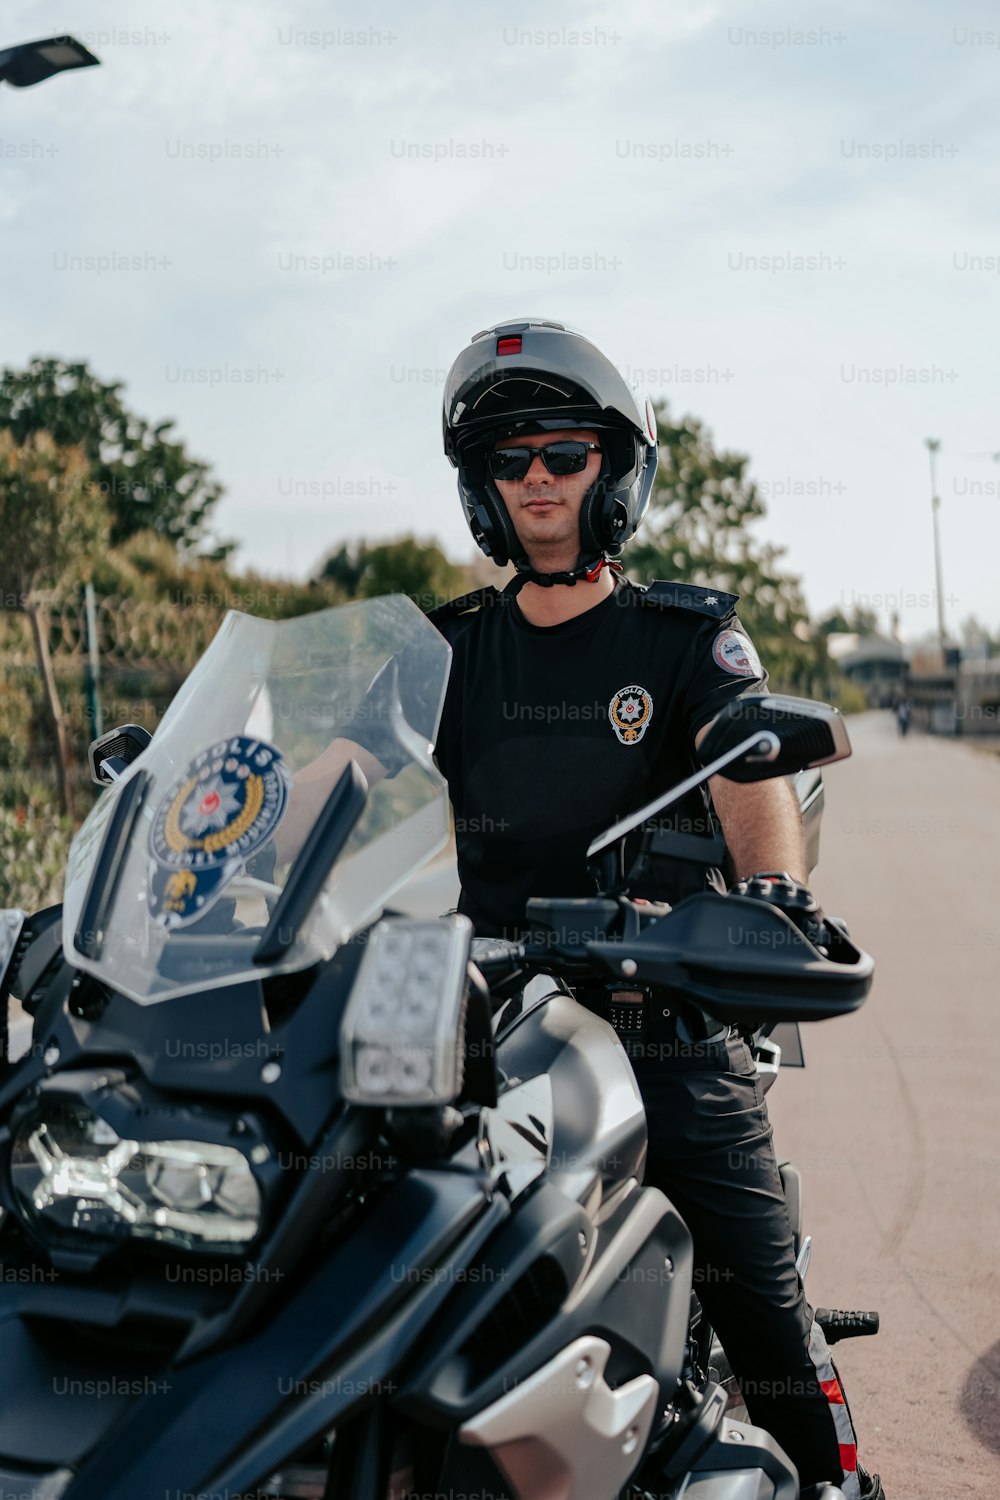 Un homme assis sur une moto portant un casque